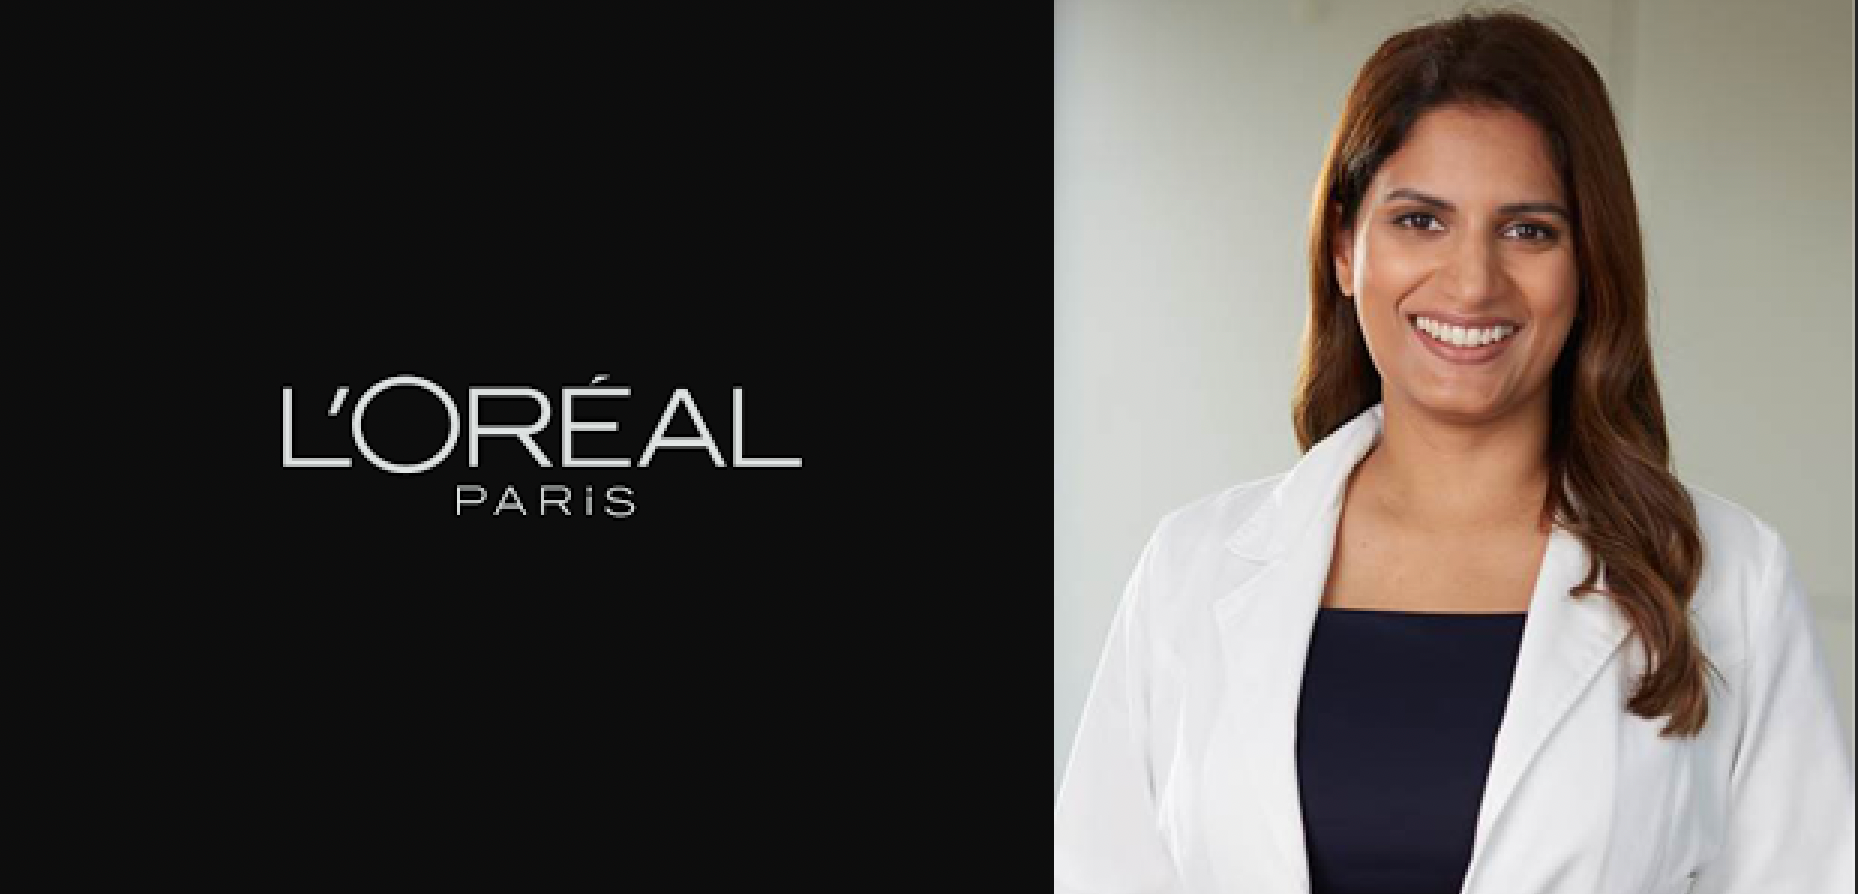 Loreal Paris india consultant dermatologist